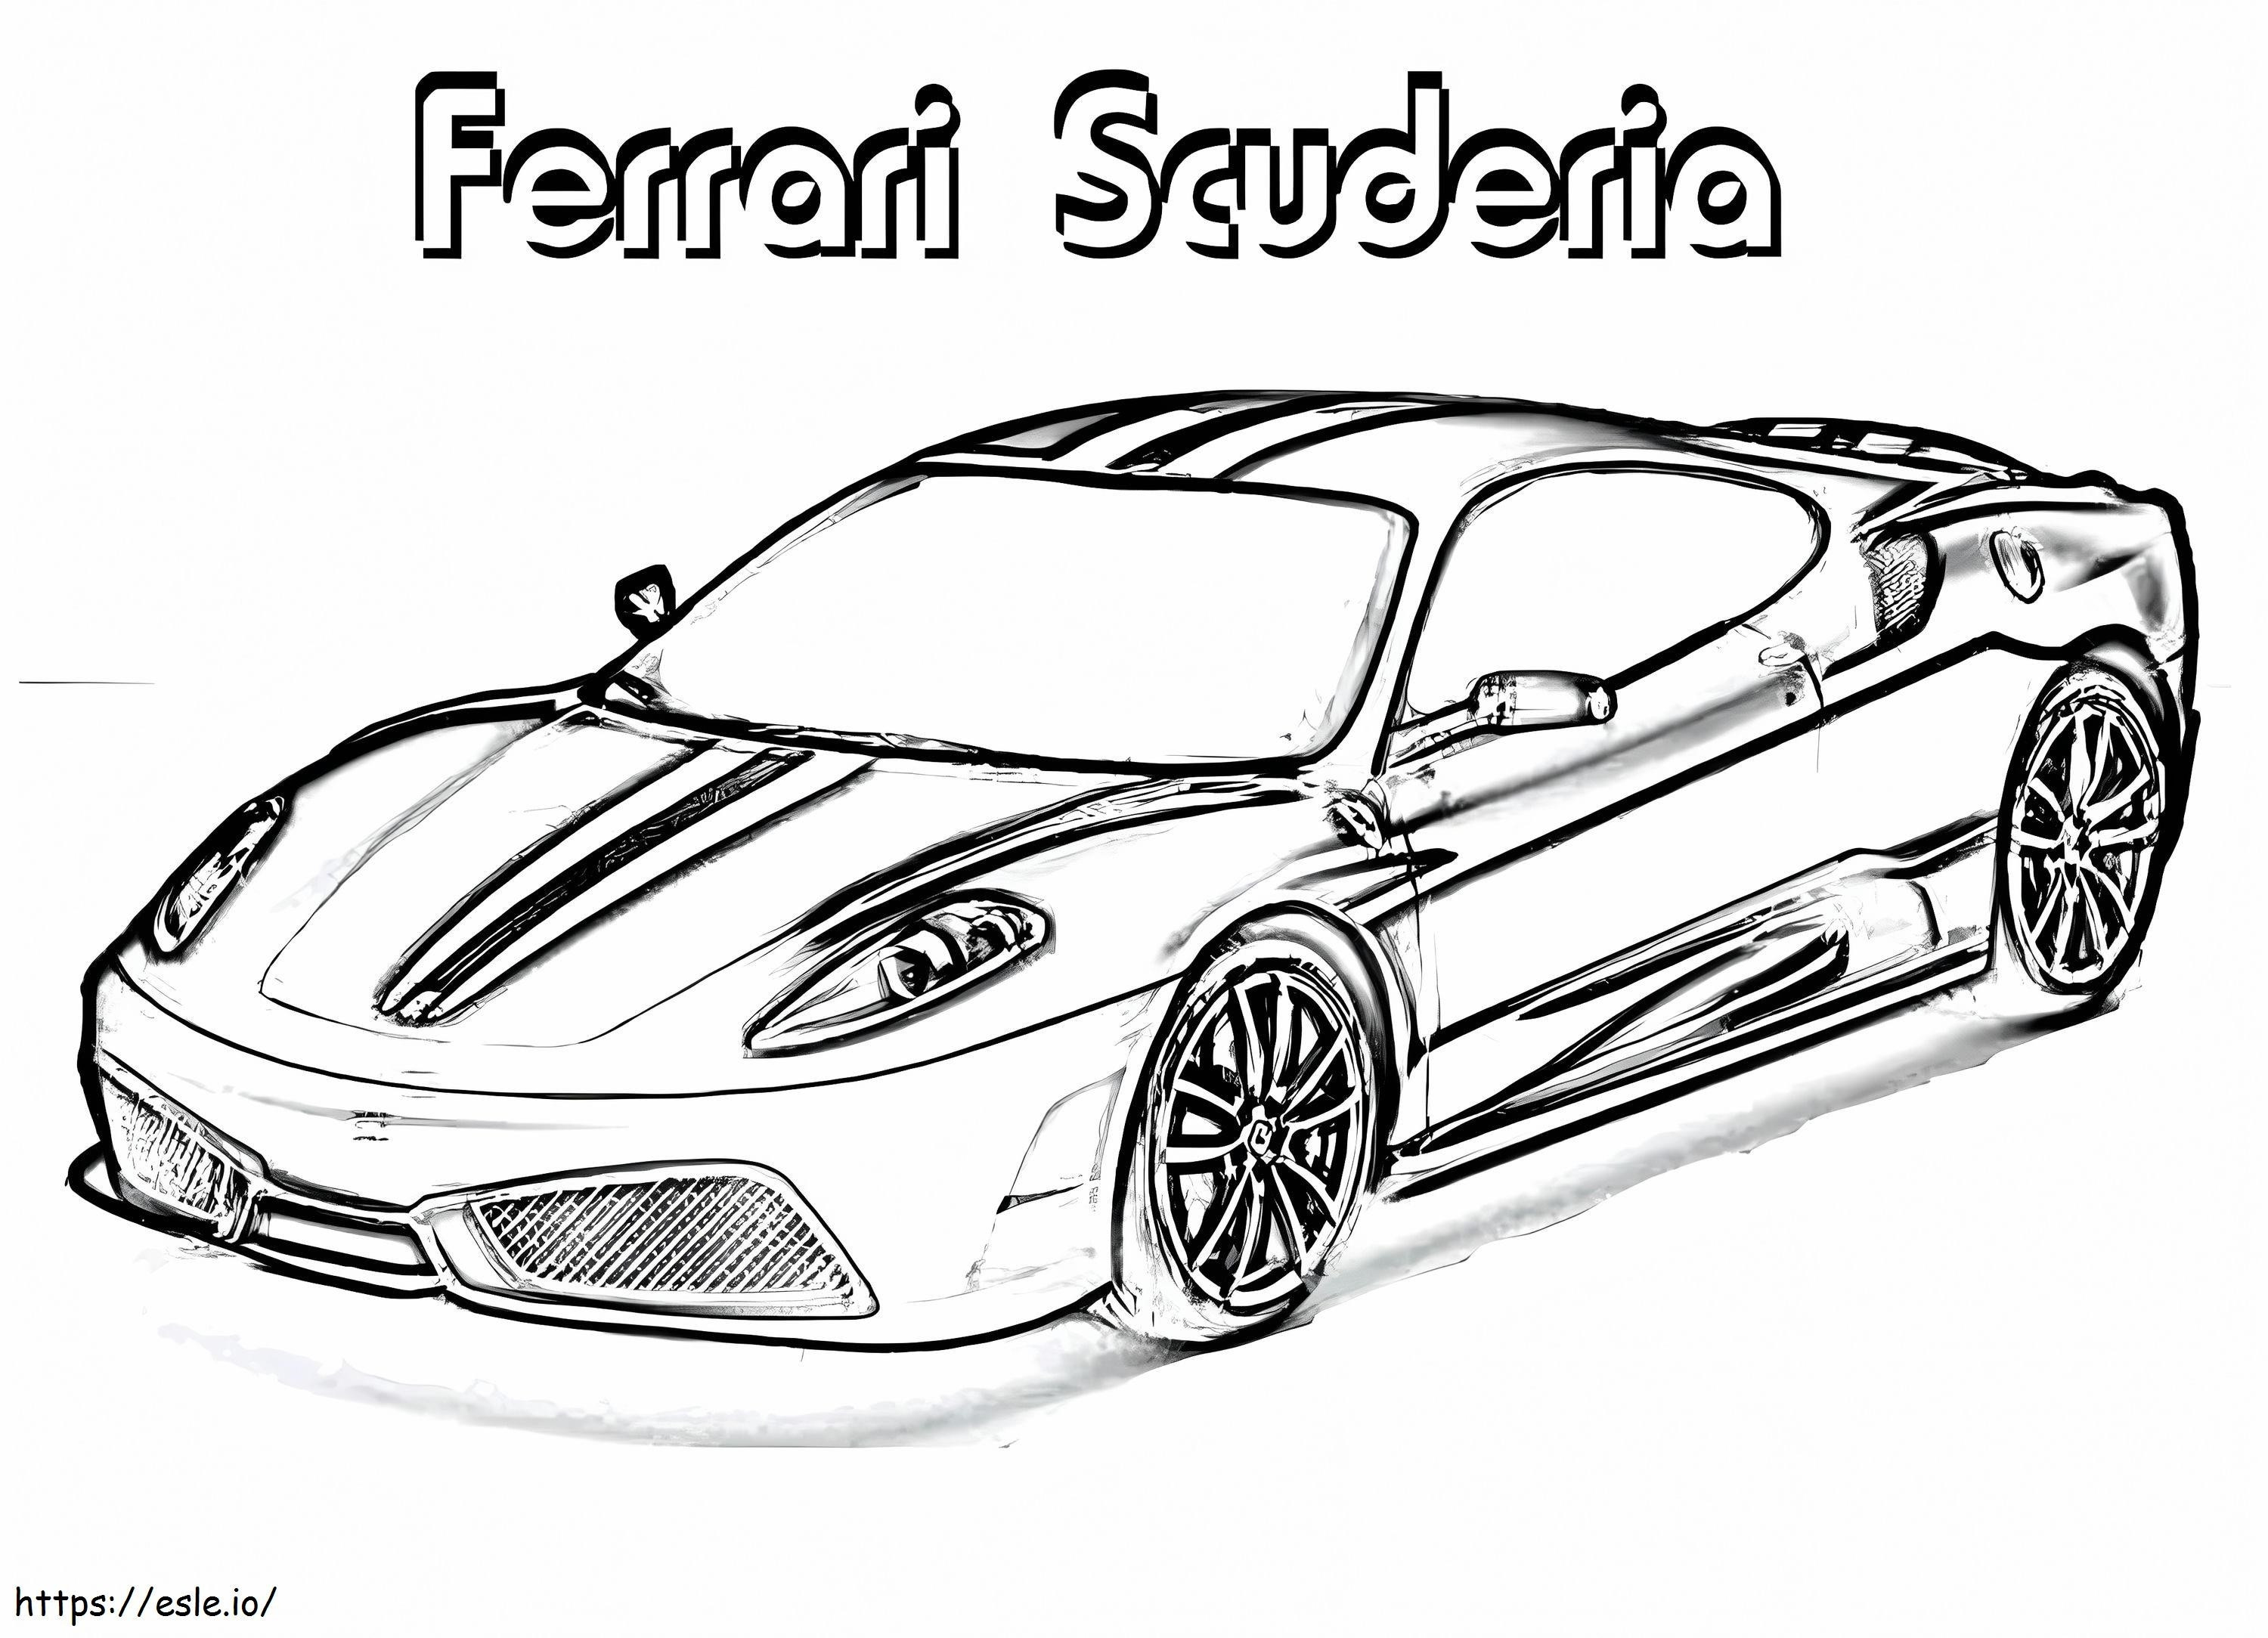 Scuderia Ferrari da colorare